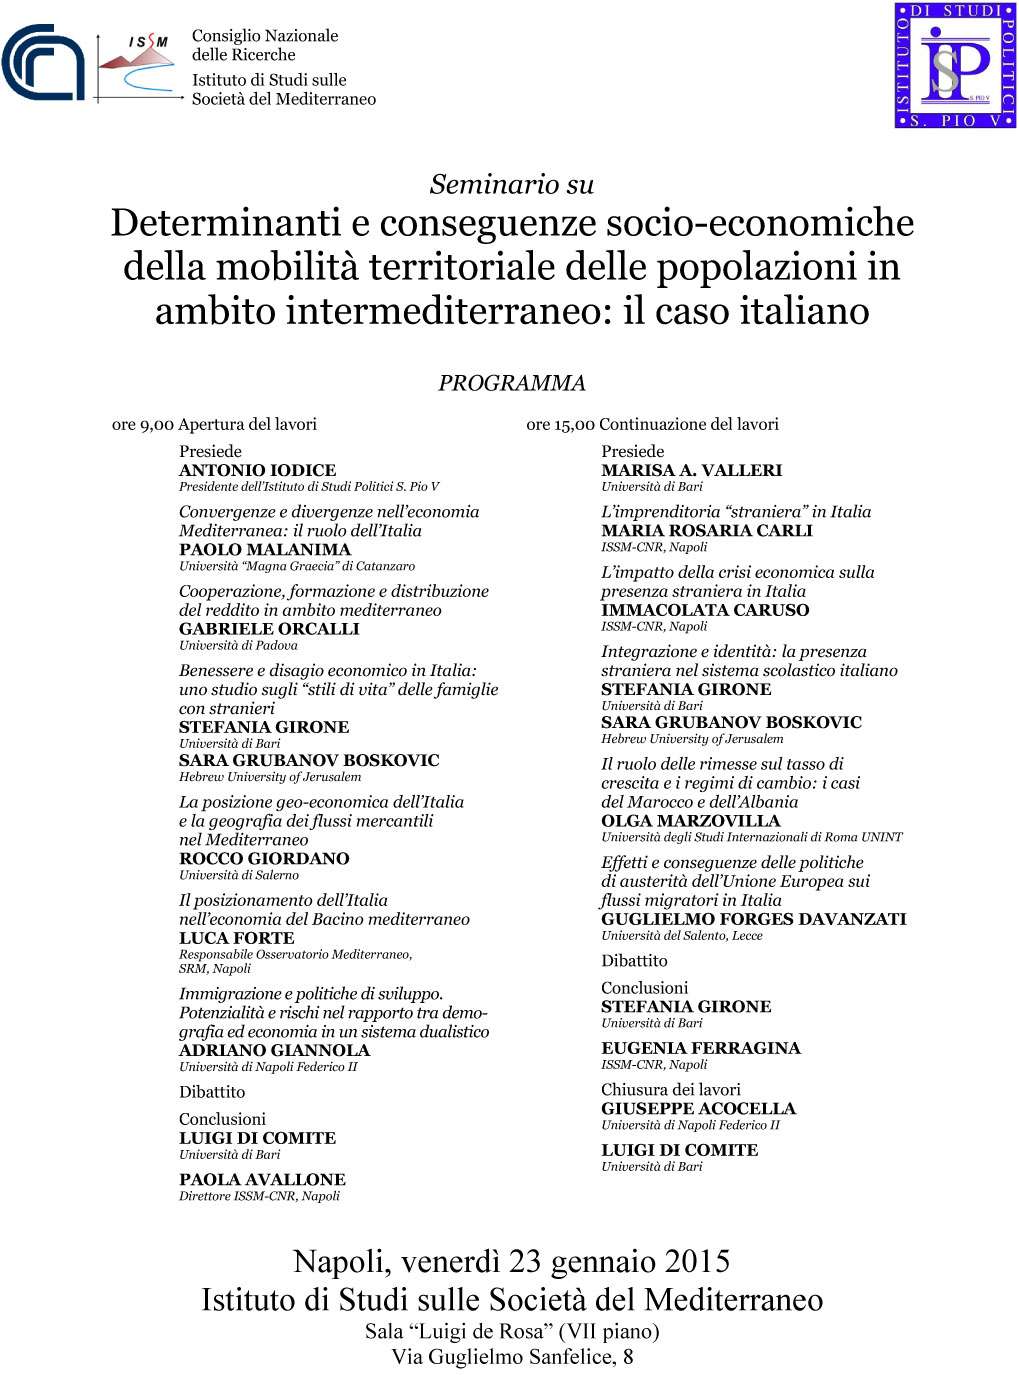 Seminario su determinanti e conseguenze socioeconomiche della mobilità territoriale delle popolazioni in ambito intermediterraneo